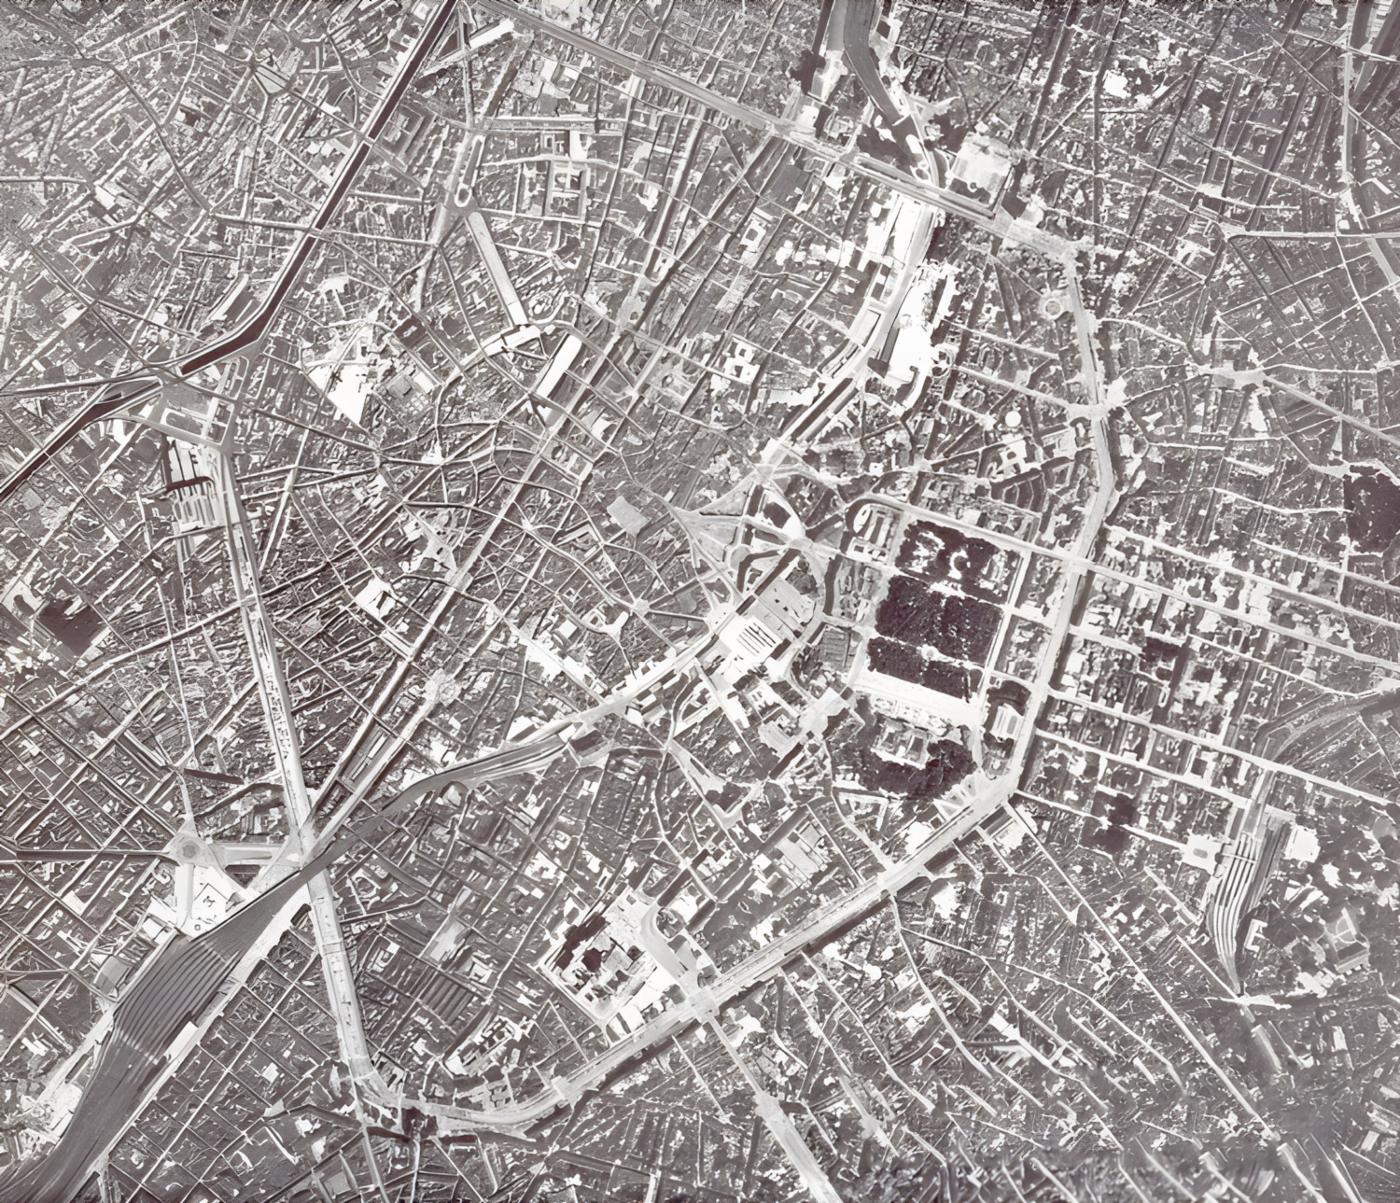  Аерофотографія центру Брюсселя, де розташована штаб-квартира НАТО і де минулого жовтня відбулось 15-те засідання Північноатлантичної асамблеї
